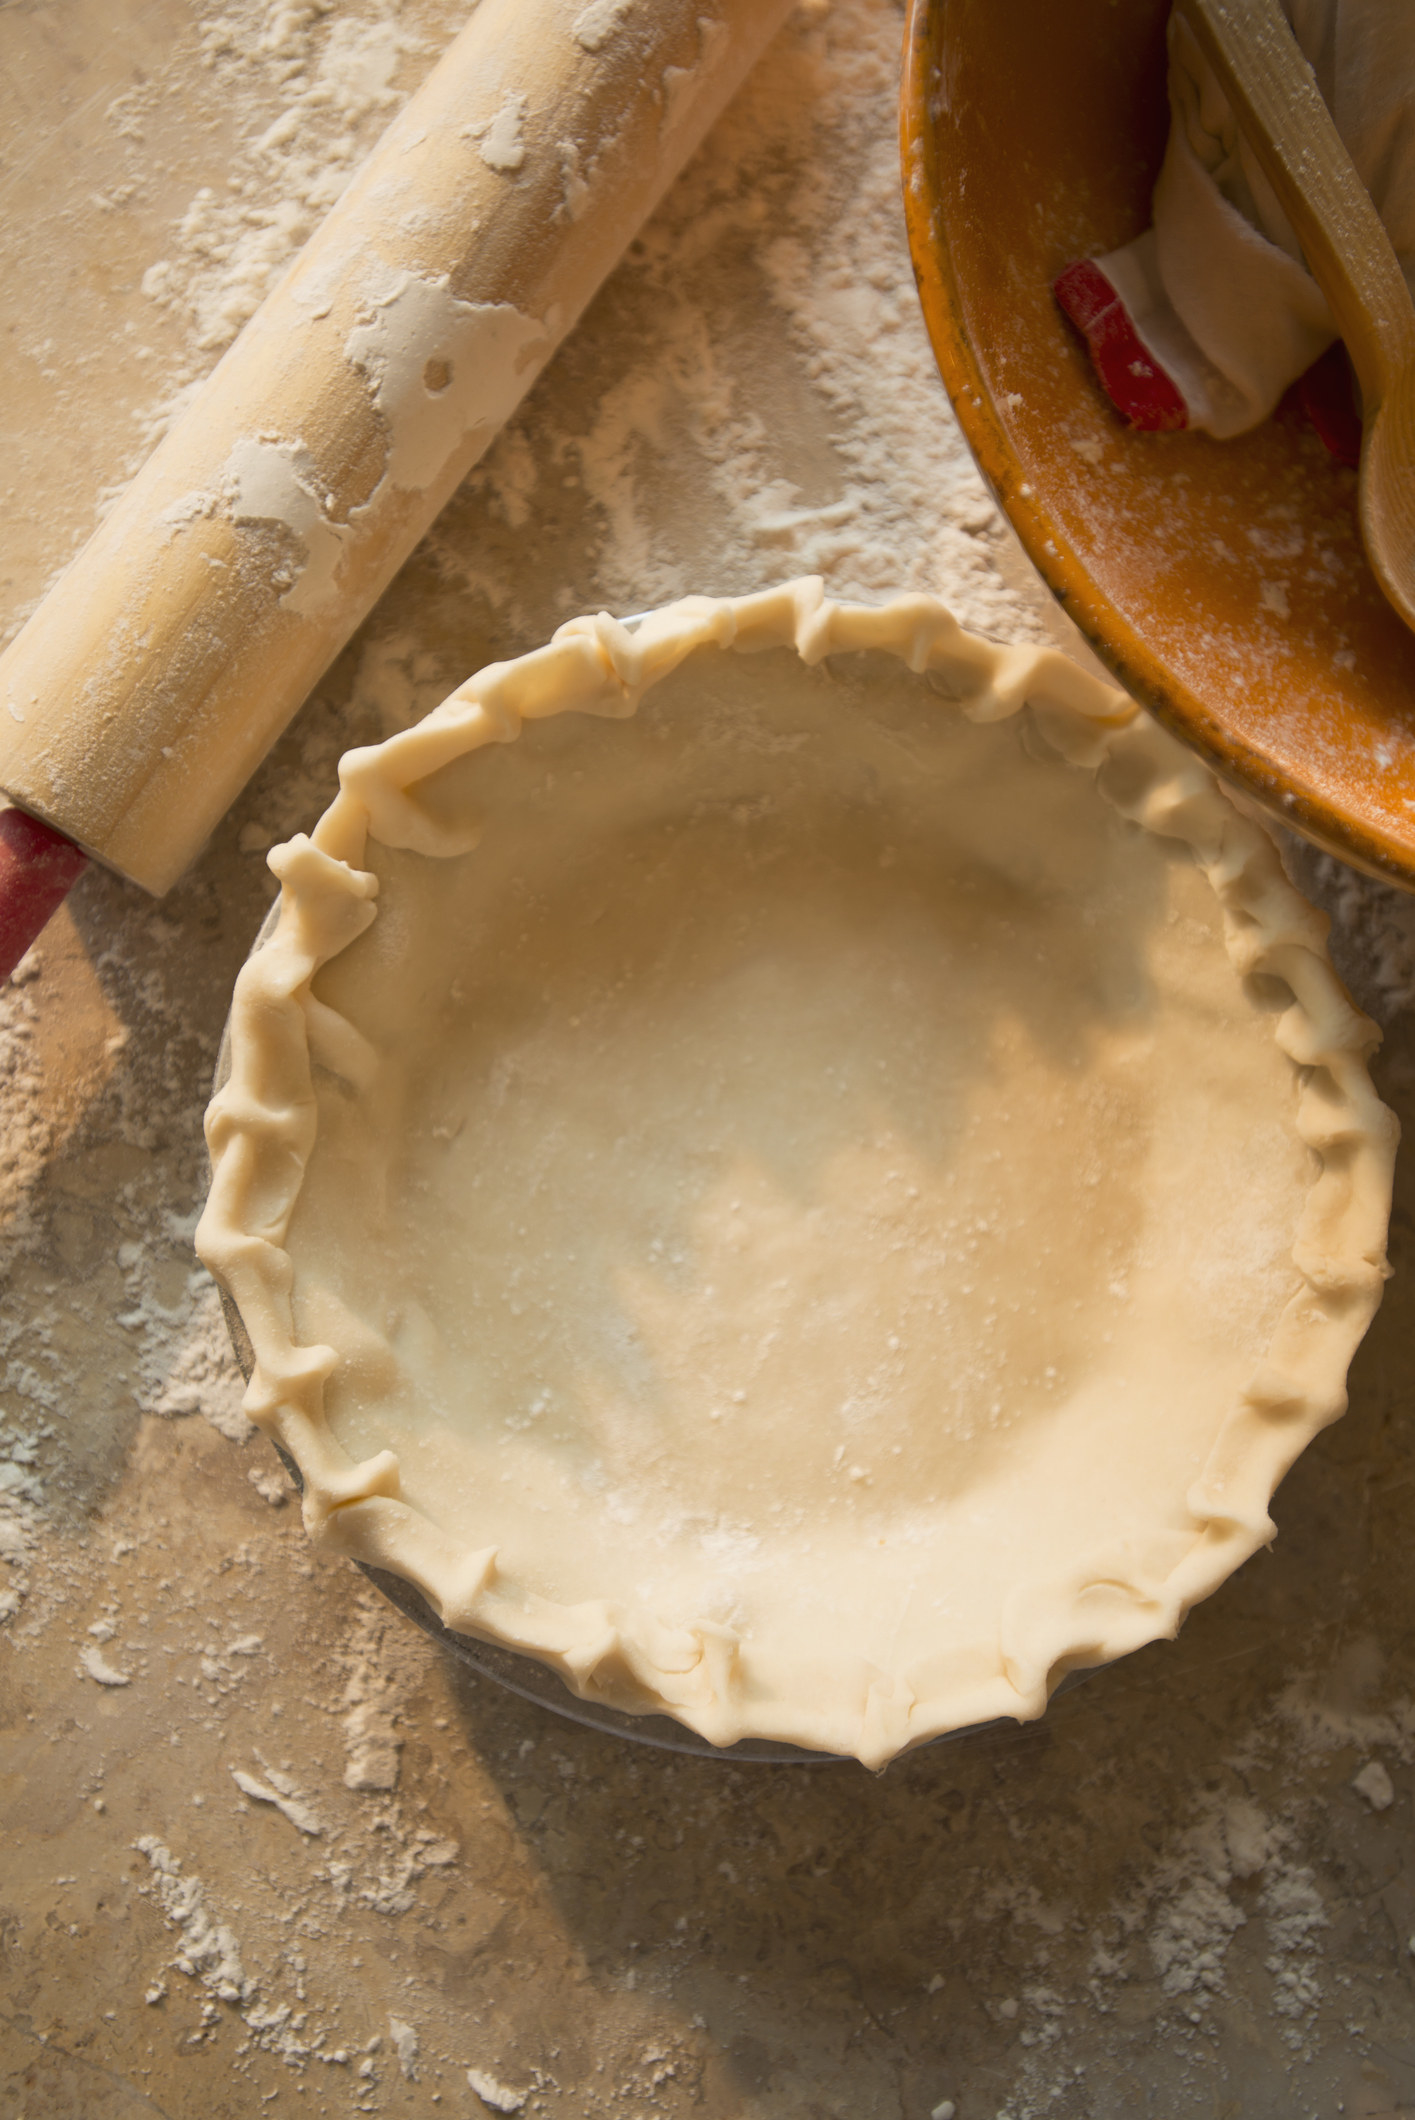 Pie crust dough in a pie pan